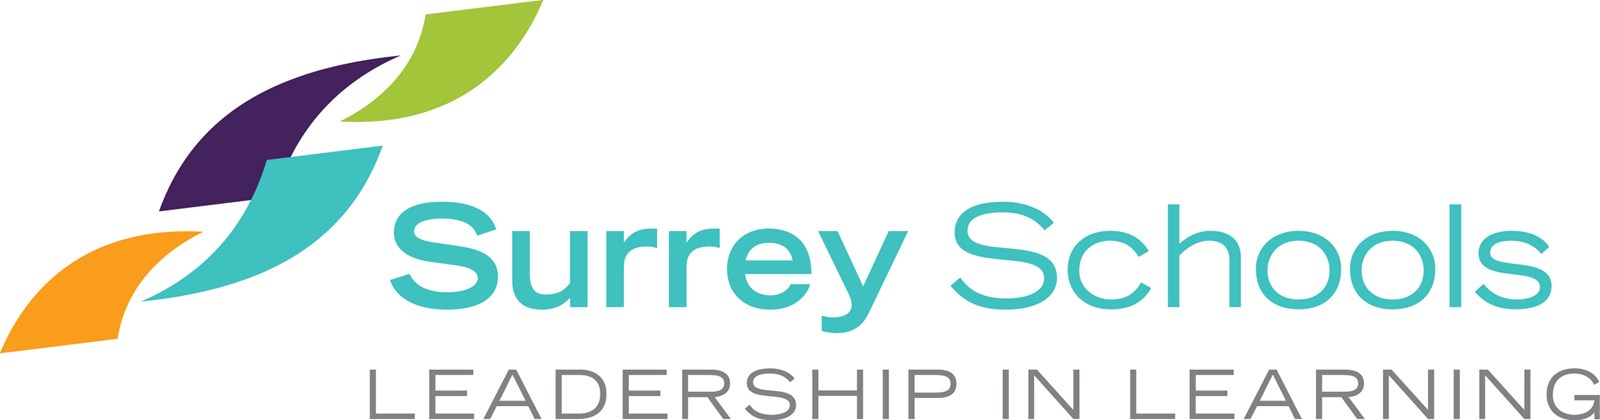 surrey-schools-logo.26f586136405-1.jpg